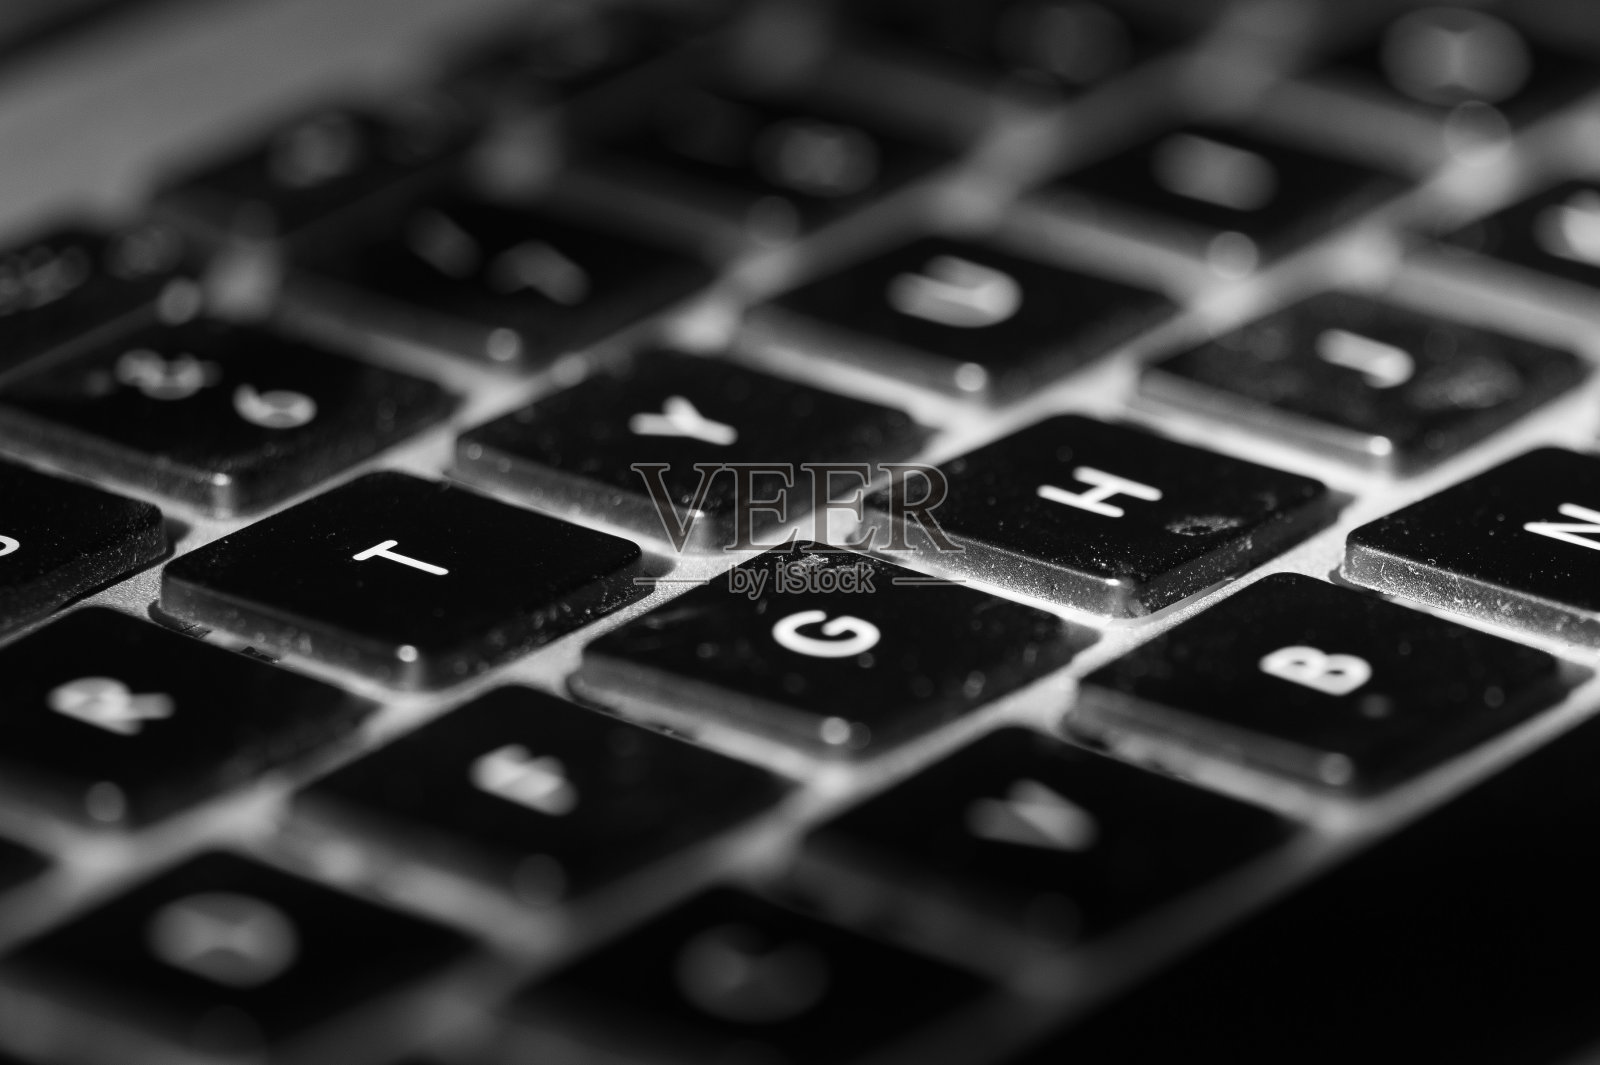 笔记本电脑键盘按键的详细信息照片摄影图片